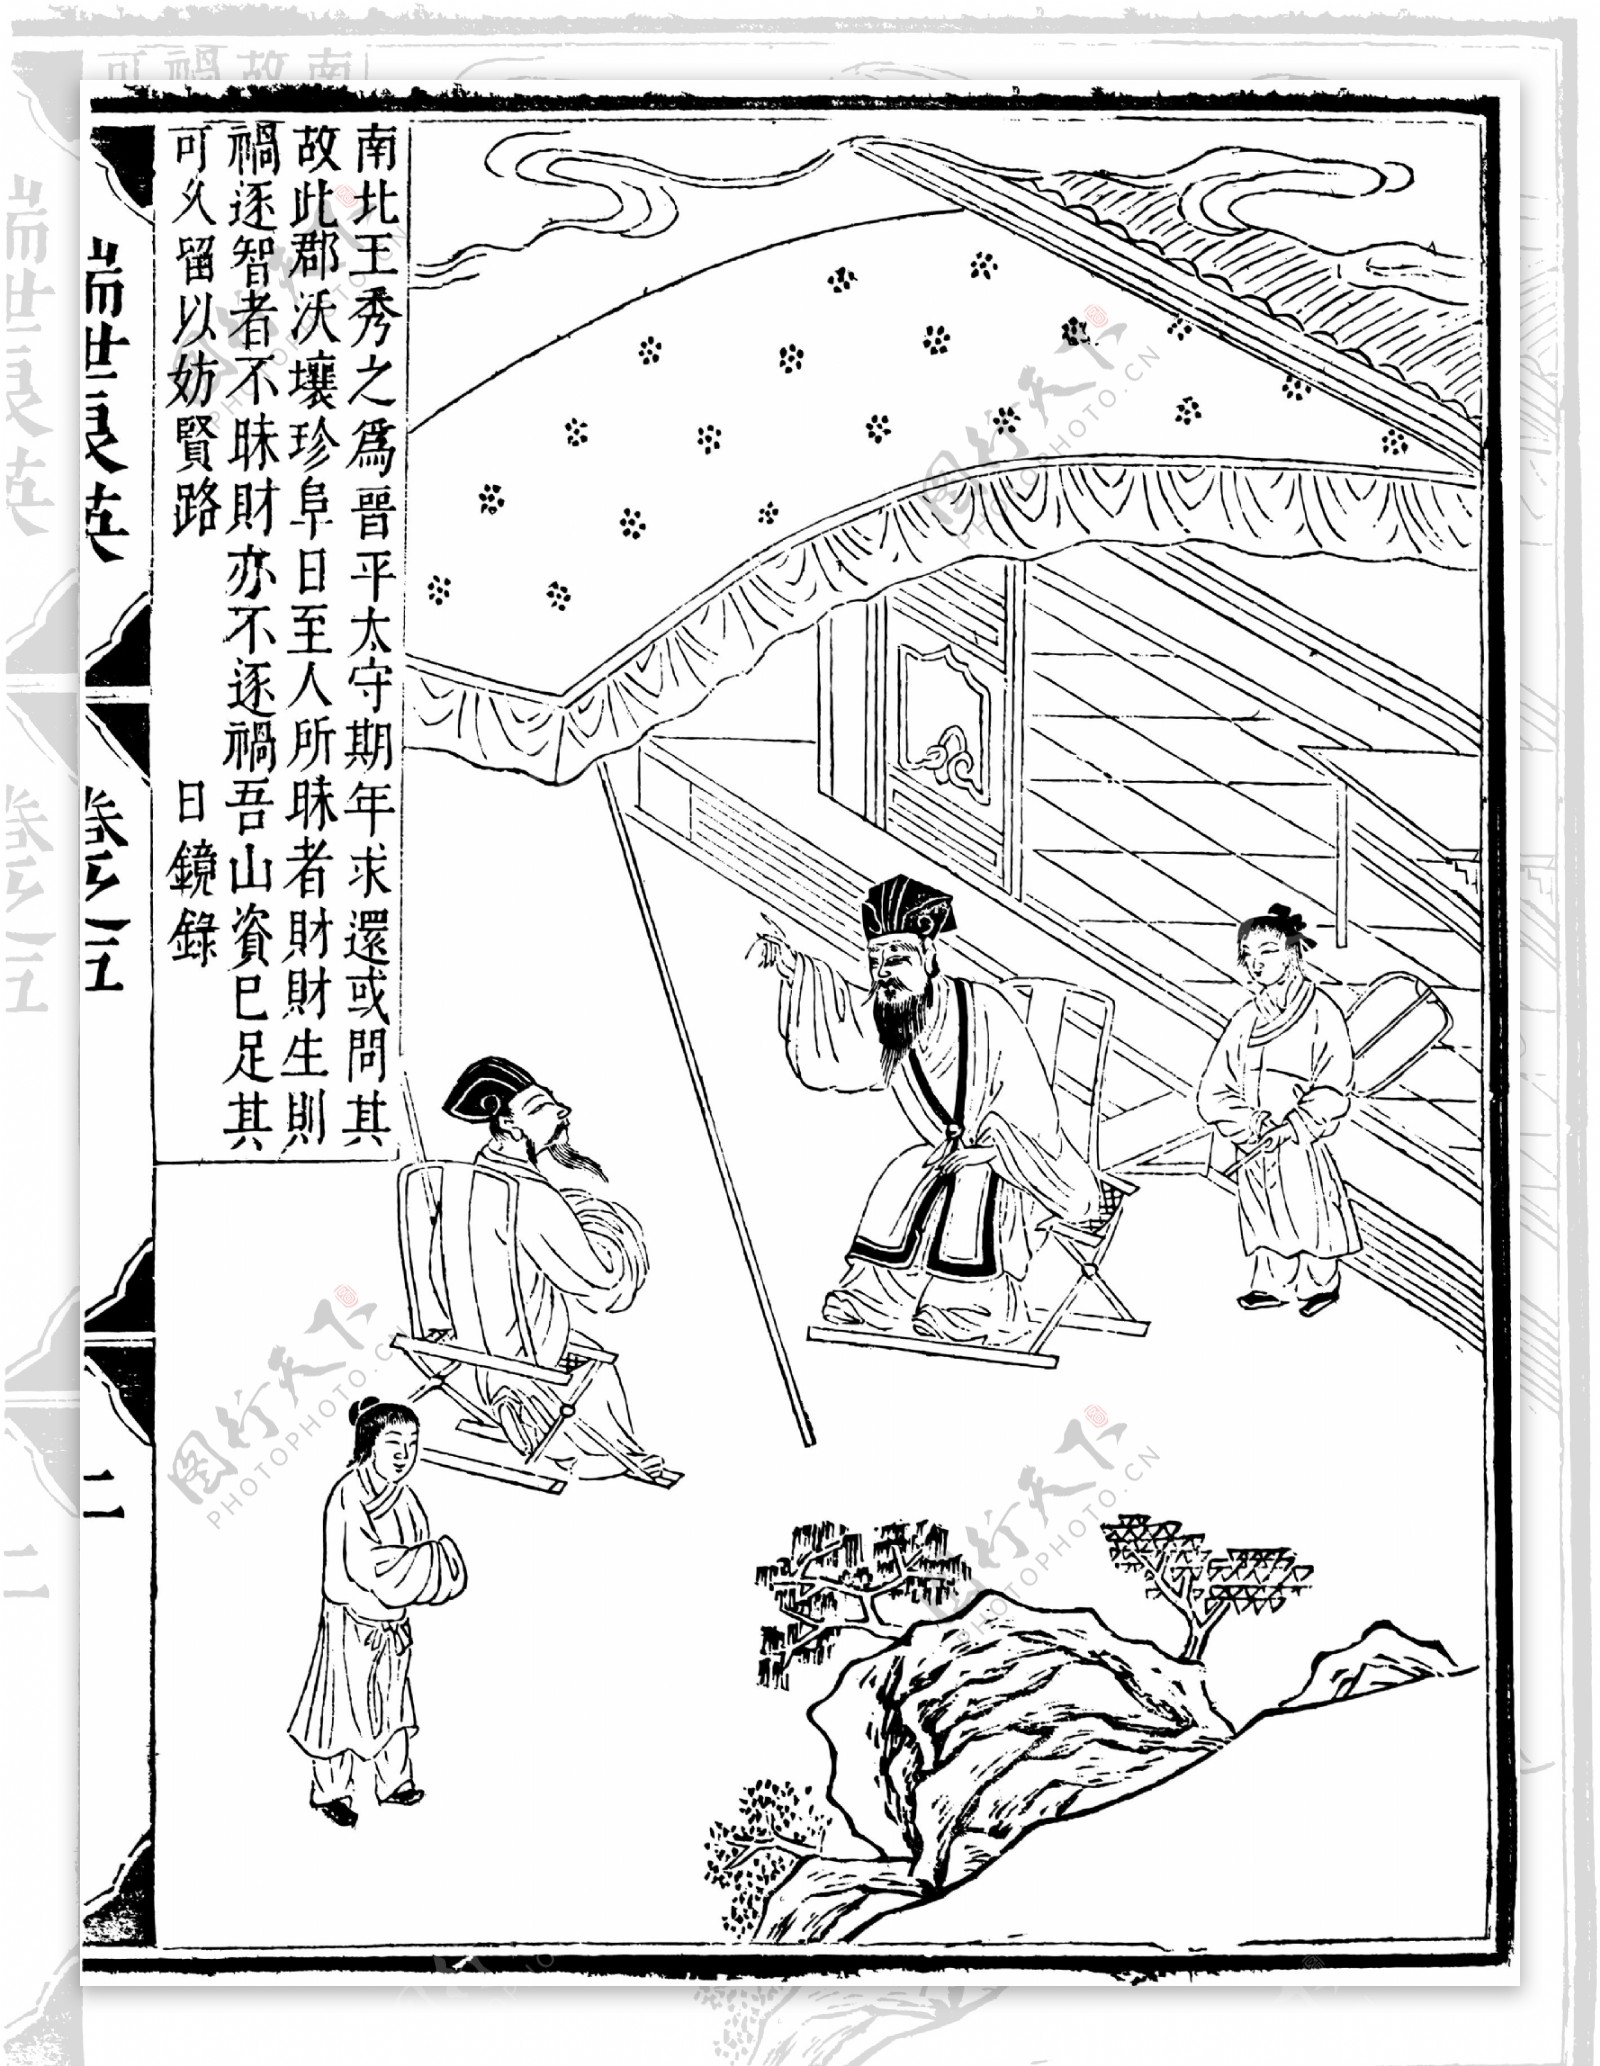 瑞世良英木刻版画中国传统文化45